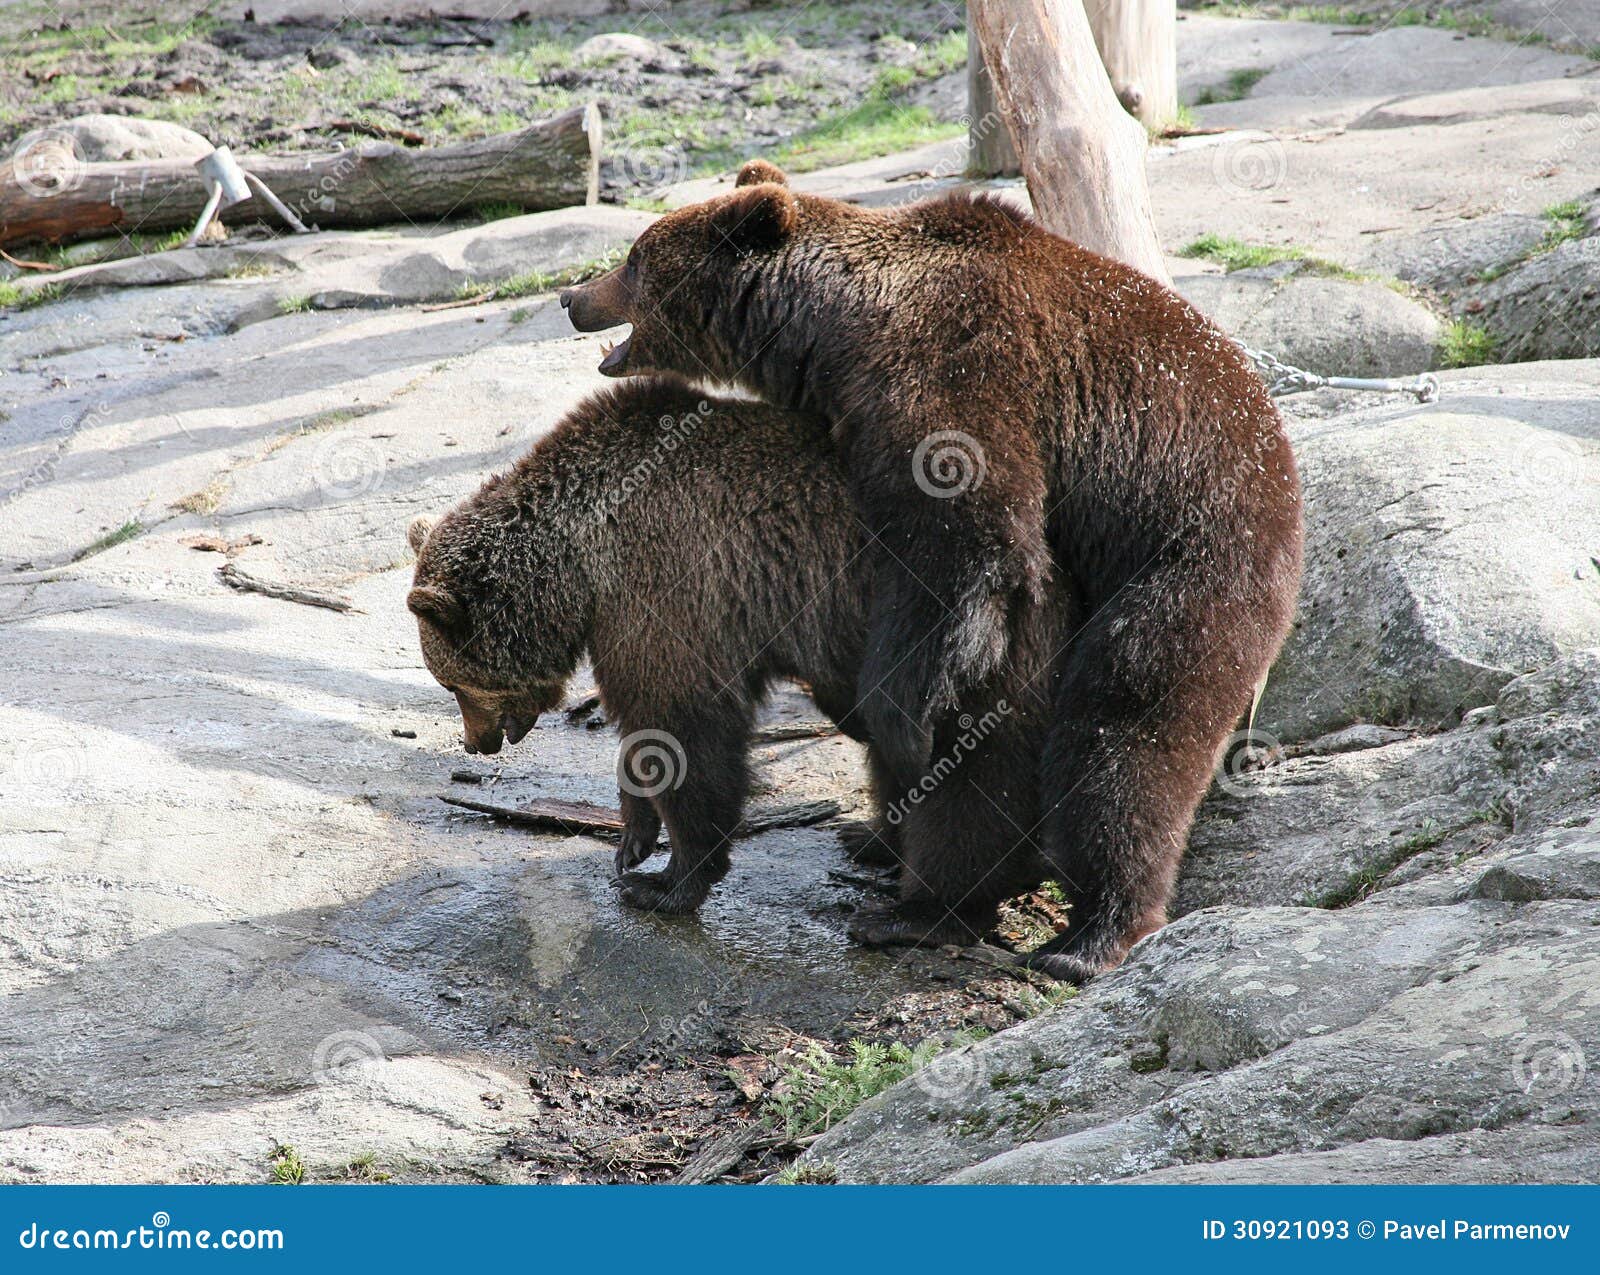 Как сношаются медведи